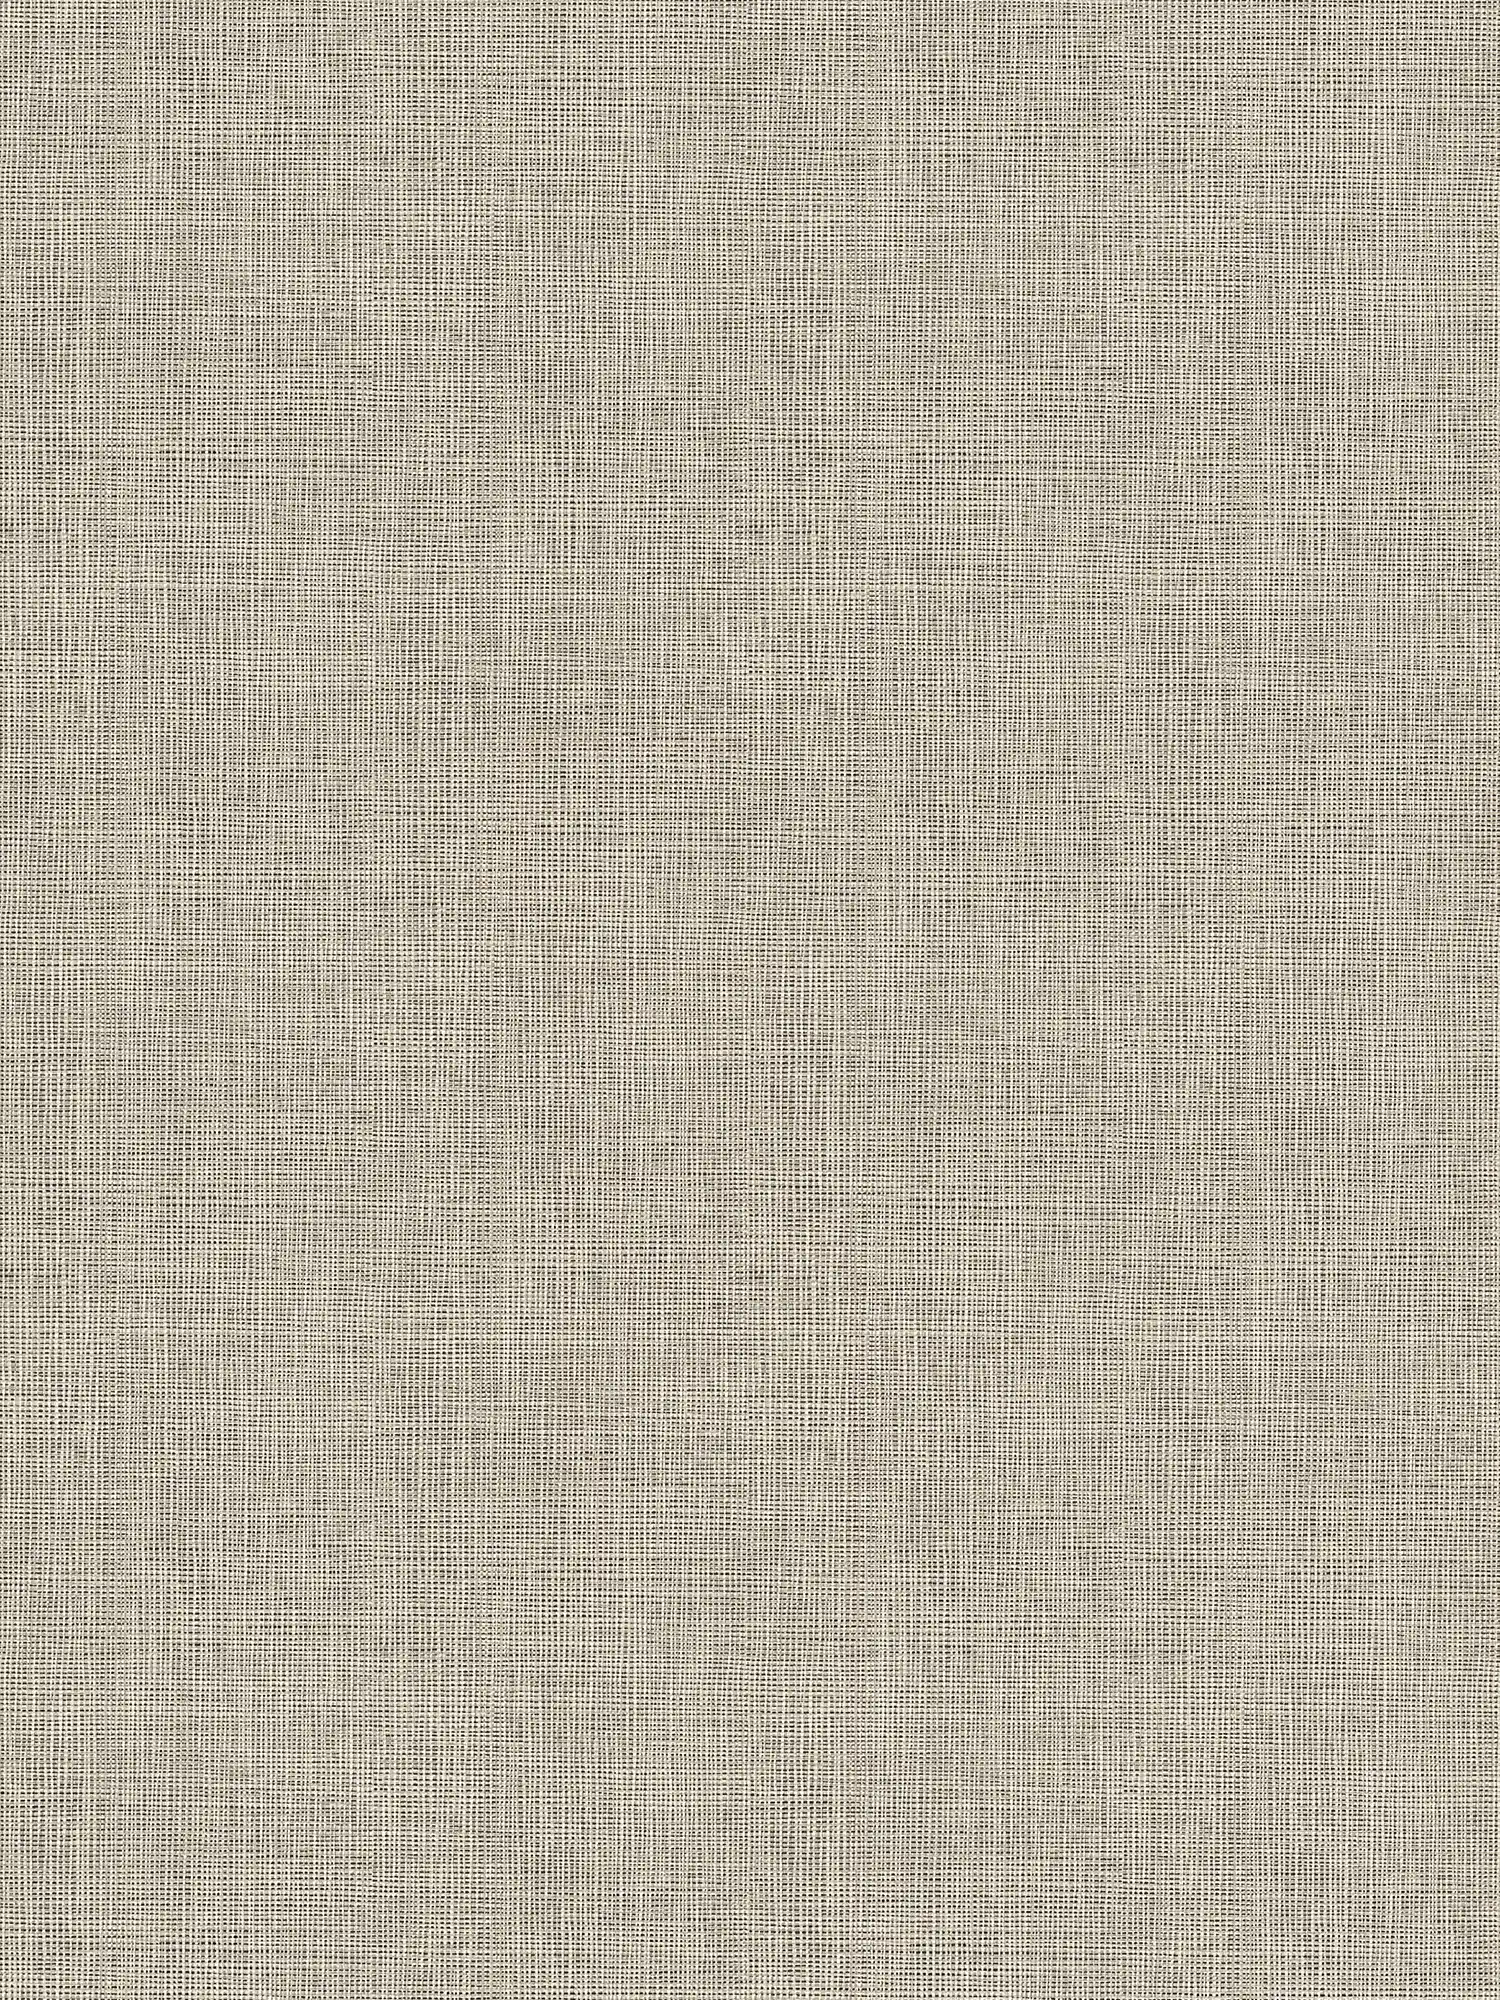 Papel pintado unitario de aspecto textil con detalles metálicos plateados - azul, gris, plata
